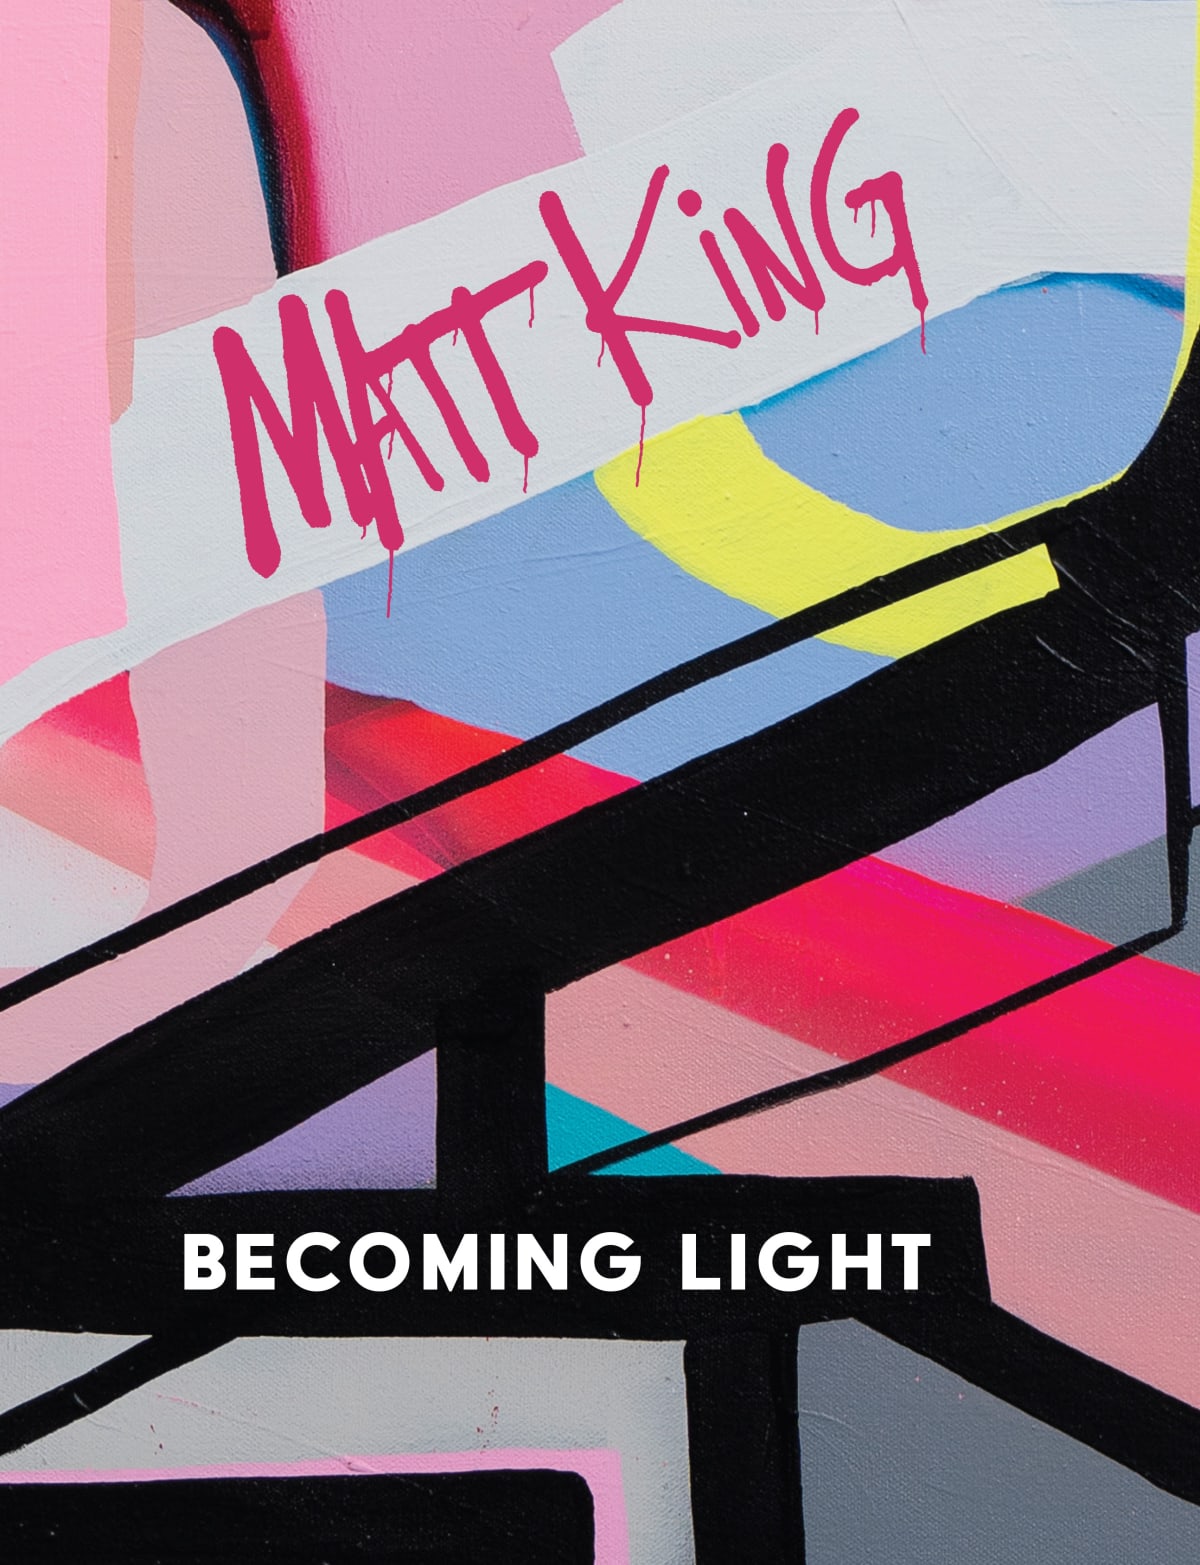 Matt King: Becoming Light